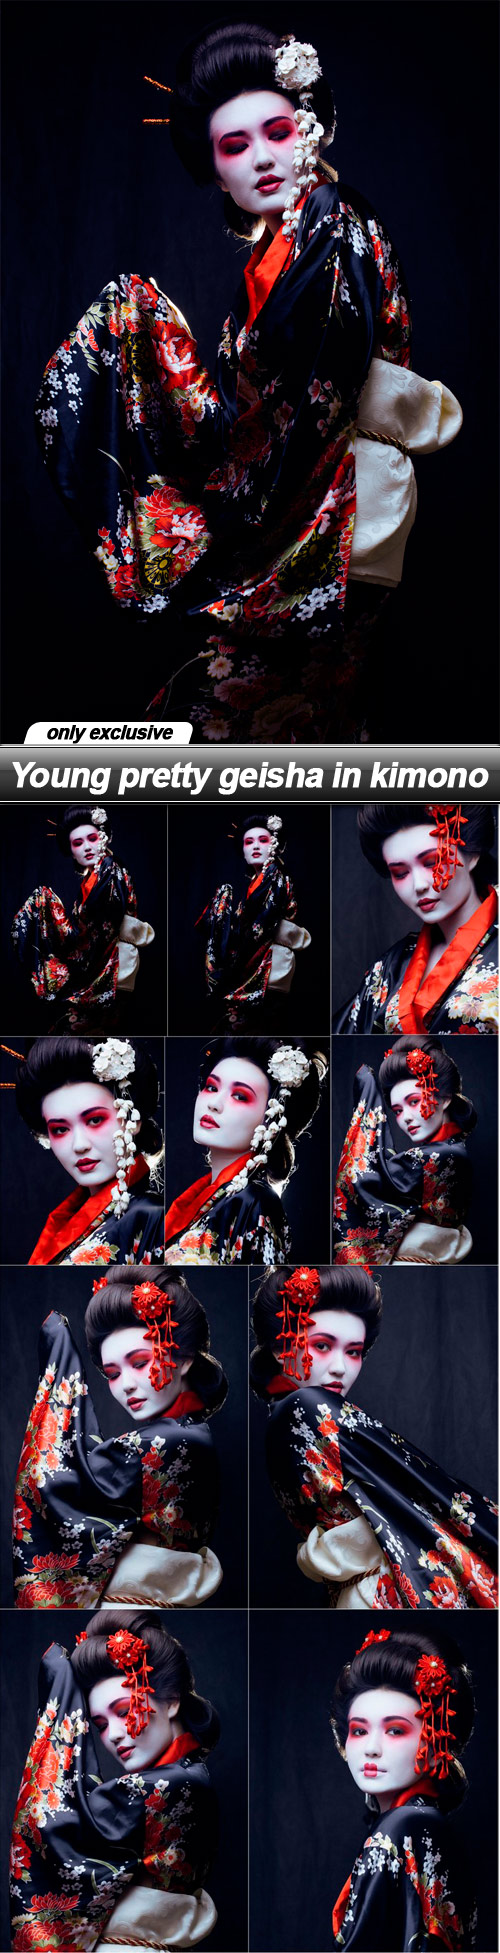 Young pretty geisha in kimono - 10 UHQ JPEG